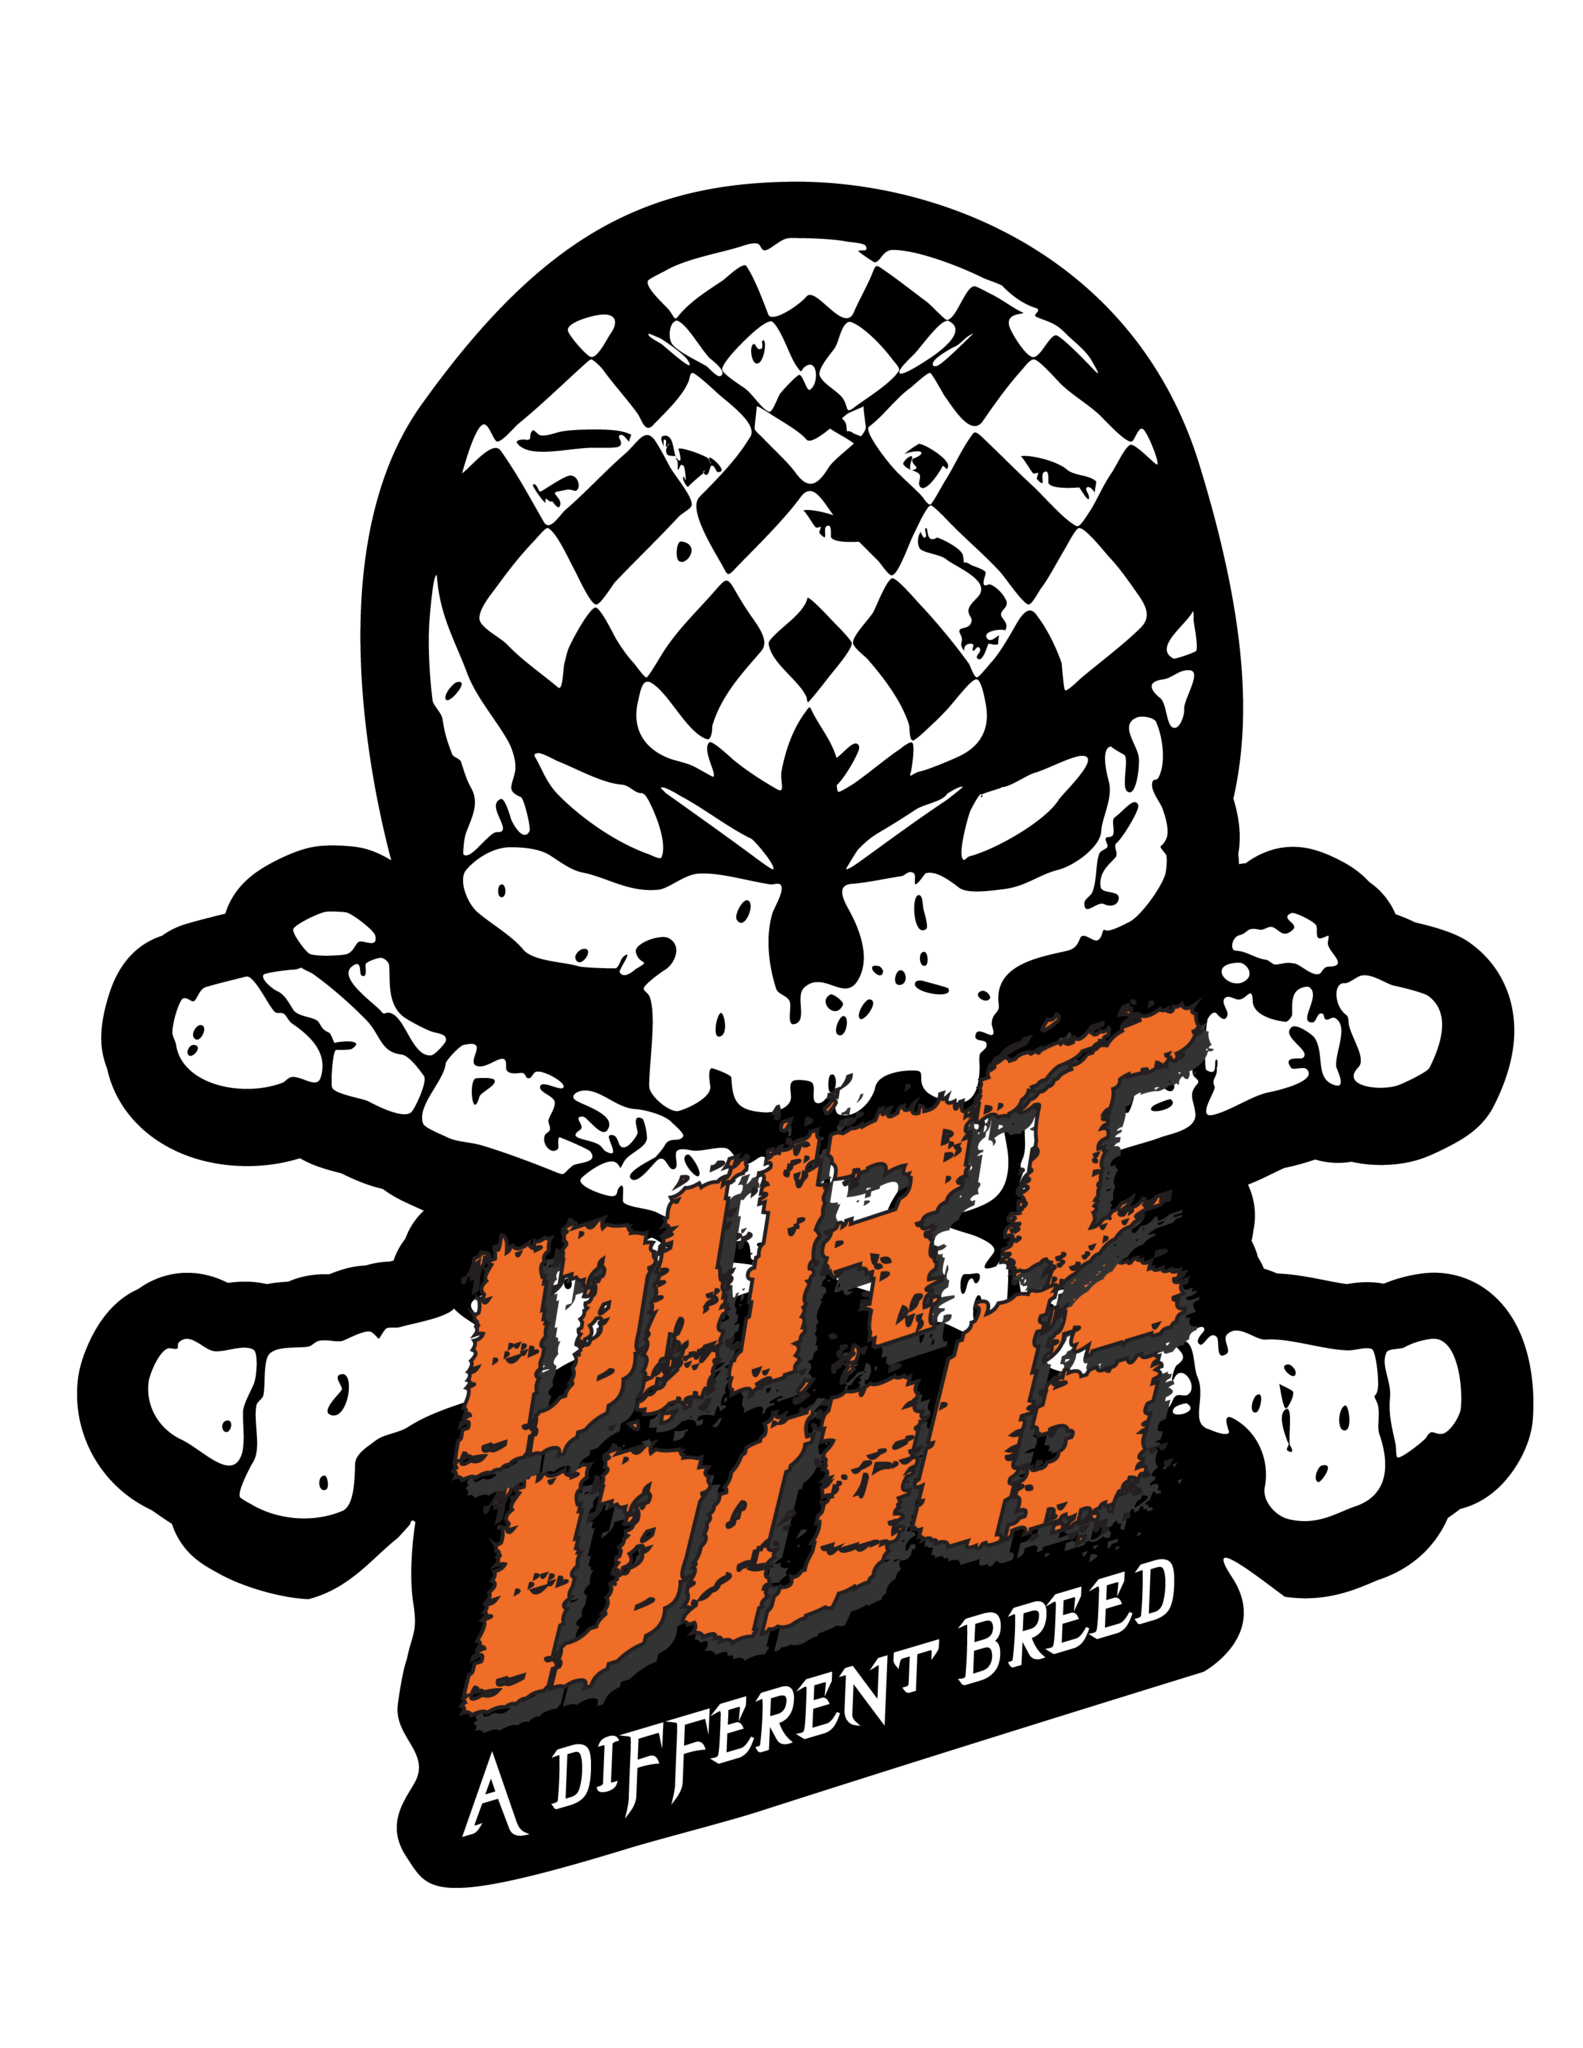 Registered Dirt Dog Racer Annual Membership